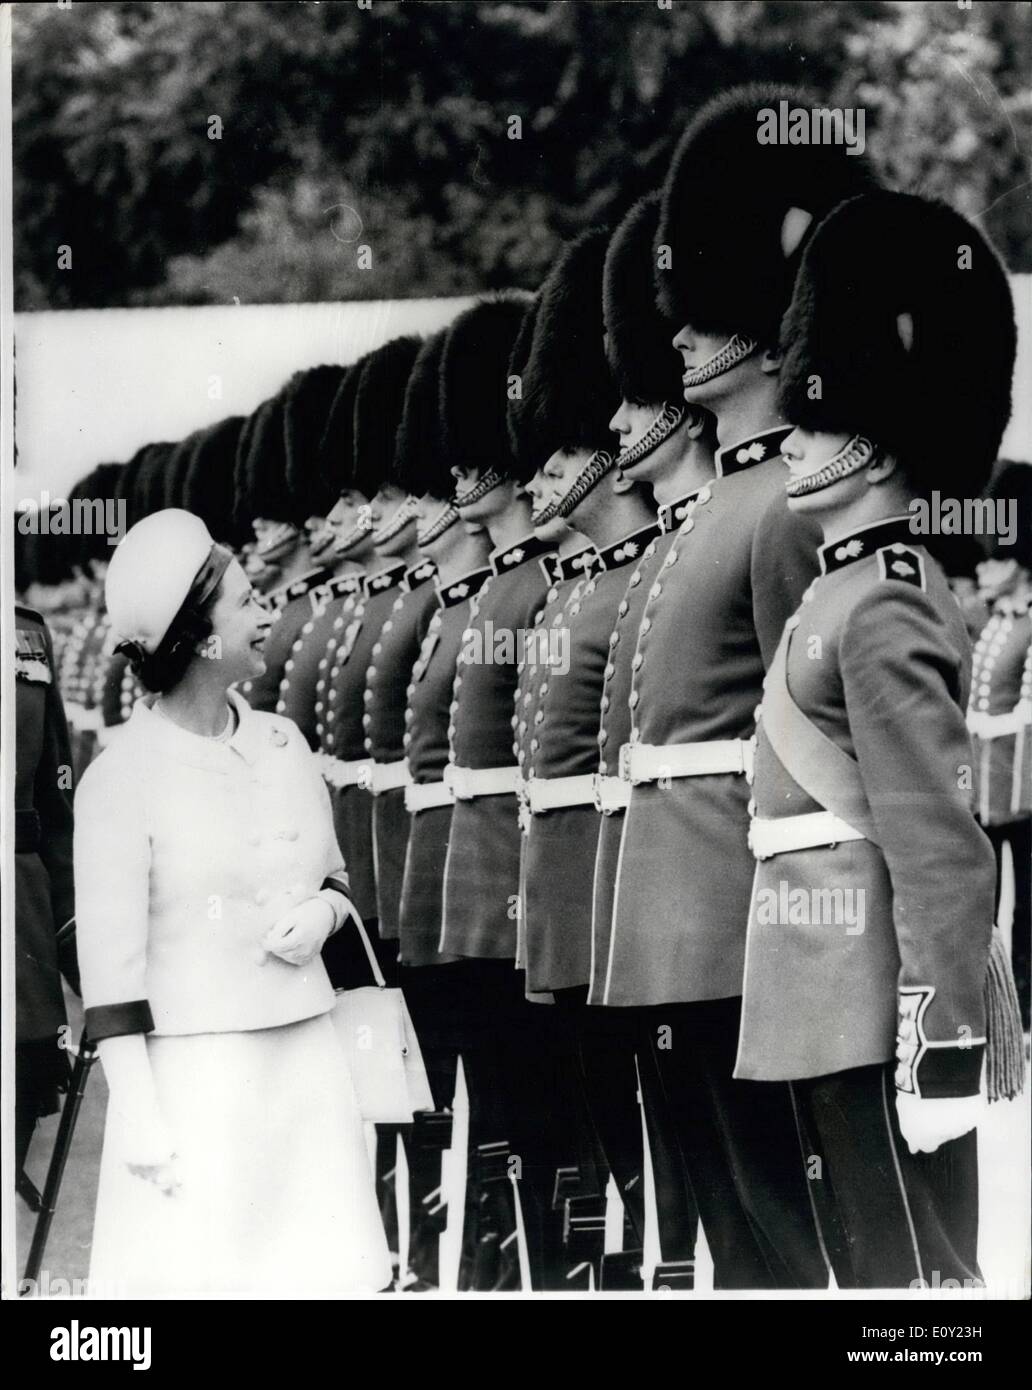 Giugno 06, 1968 - H.M. La regina, il colonnello in capo delle guardie granatieri, ispeziona la Regina è un'azienda di granatieri nel giardino del Buckingham Palace. Mostra fotografica di:- H.M. La regina si ferma a parlare con un guardsman durante la sua ispezione dell'azienda. Foto Stock